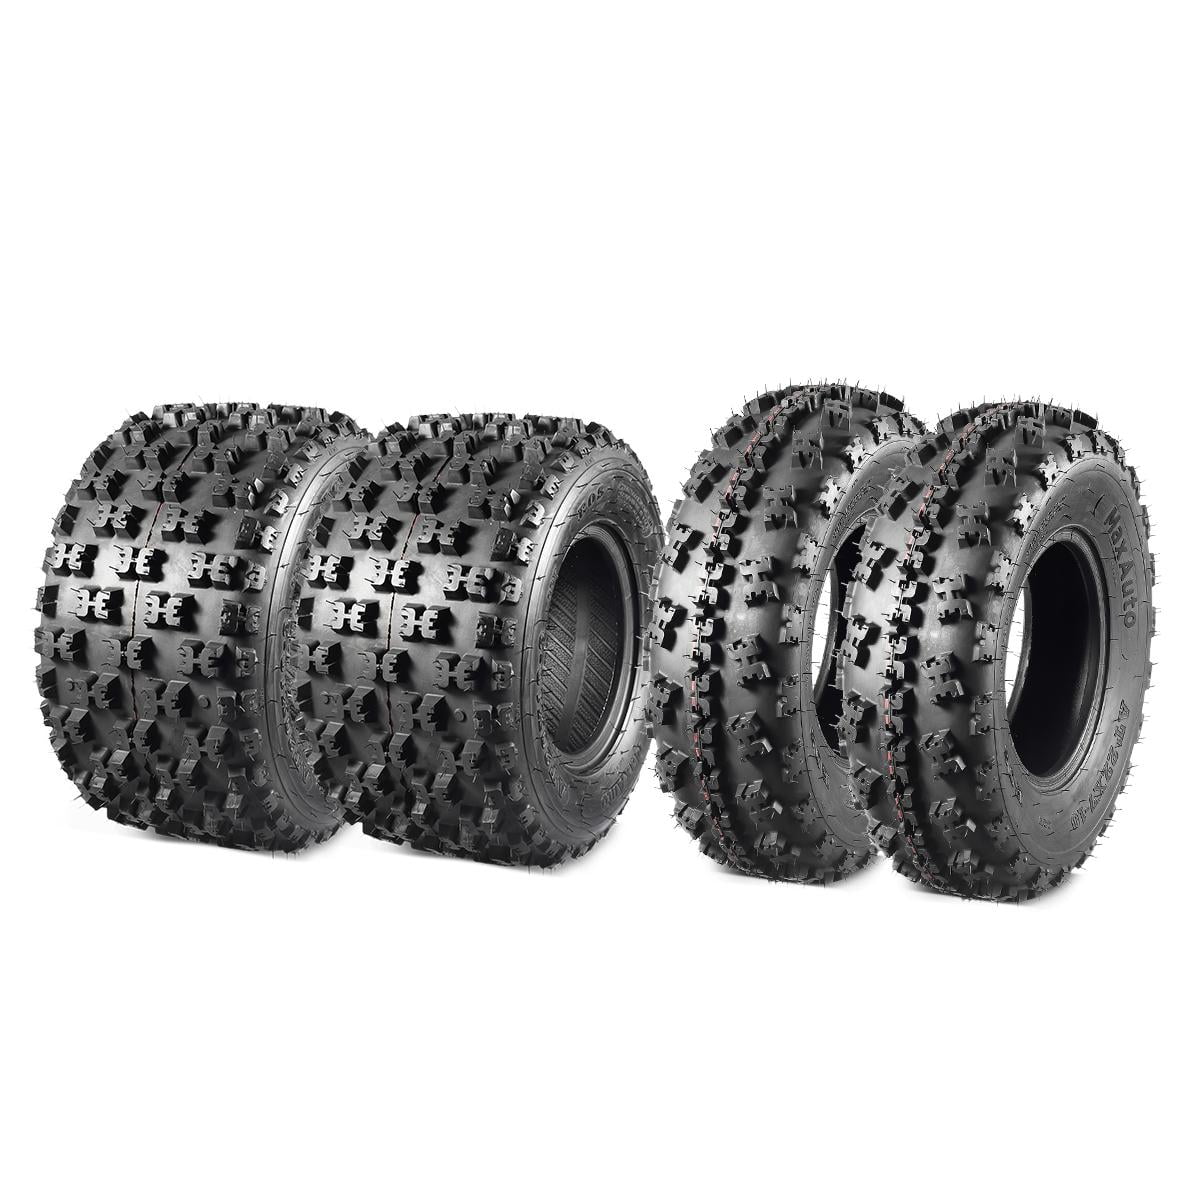 ATV Tires 22x7-10 22x7x10 Front & 22x11-9 22x11x9 Rear 4PR Set of 4 Tubeless 